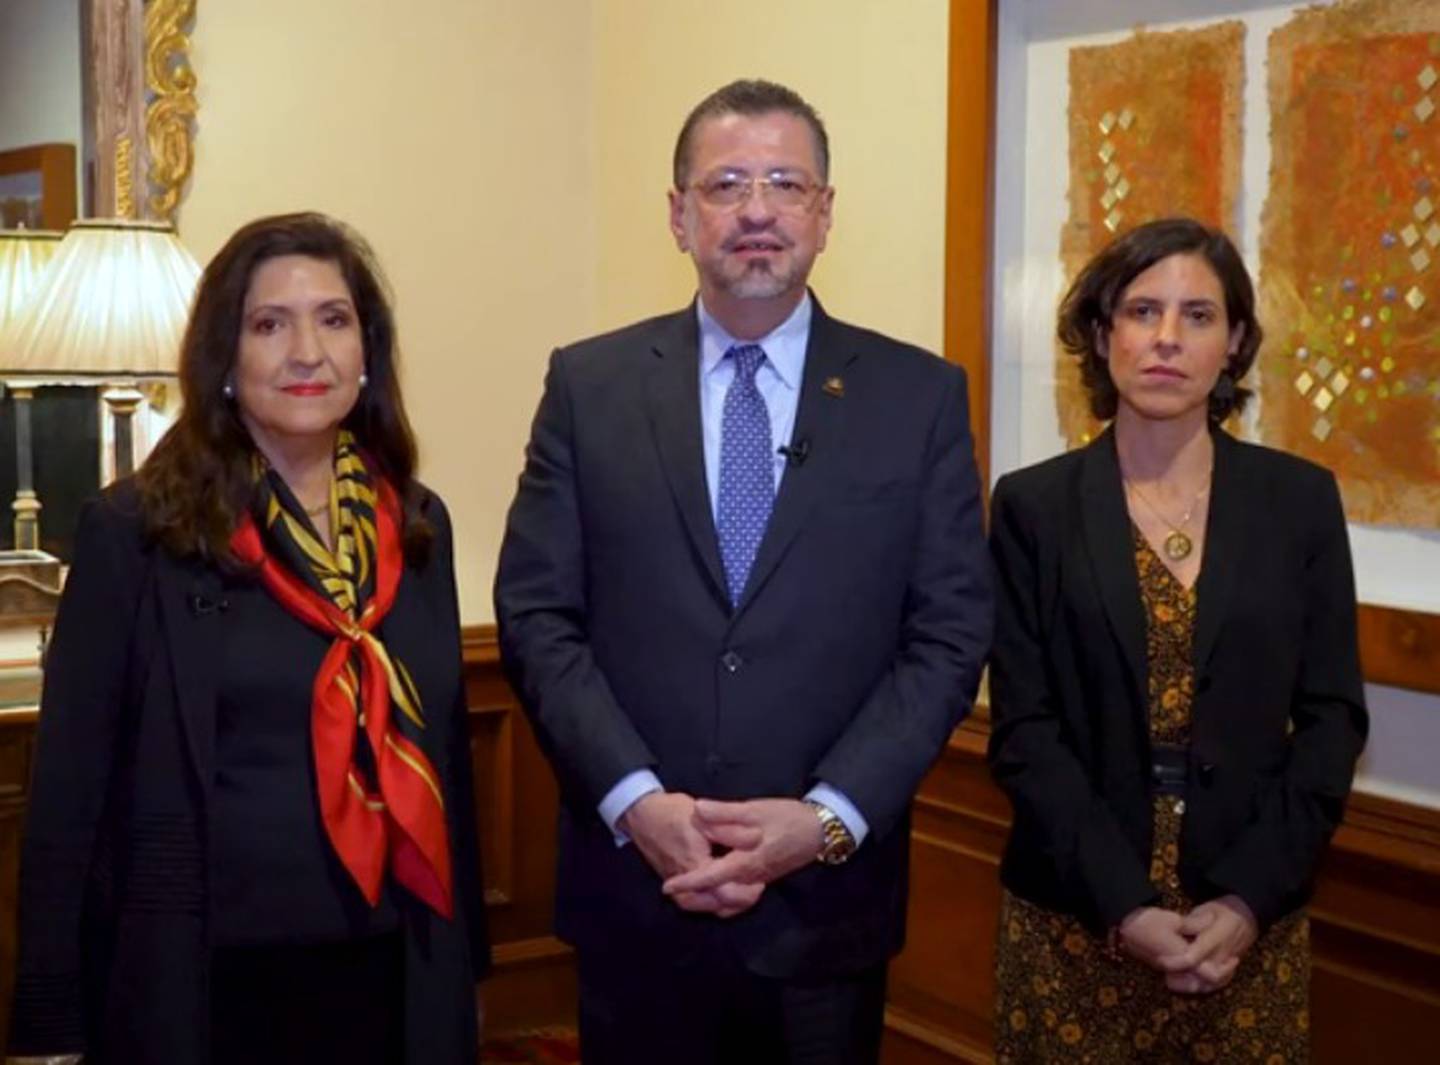 El presidente Rodrigo Chaves Robles y la ministra del MICITT, Paula Bogantes Zamora, junto con la embajadora de Estados Unidos, Cynthia Telles.dfd